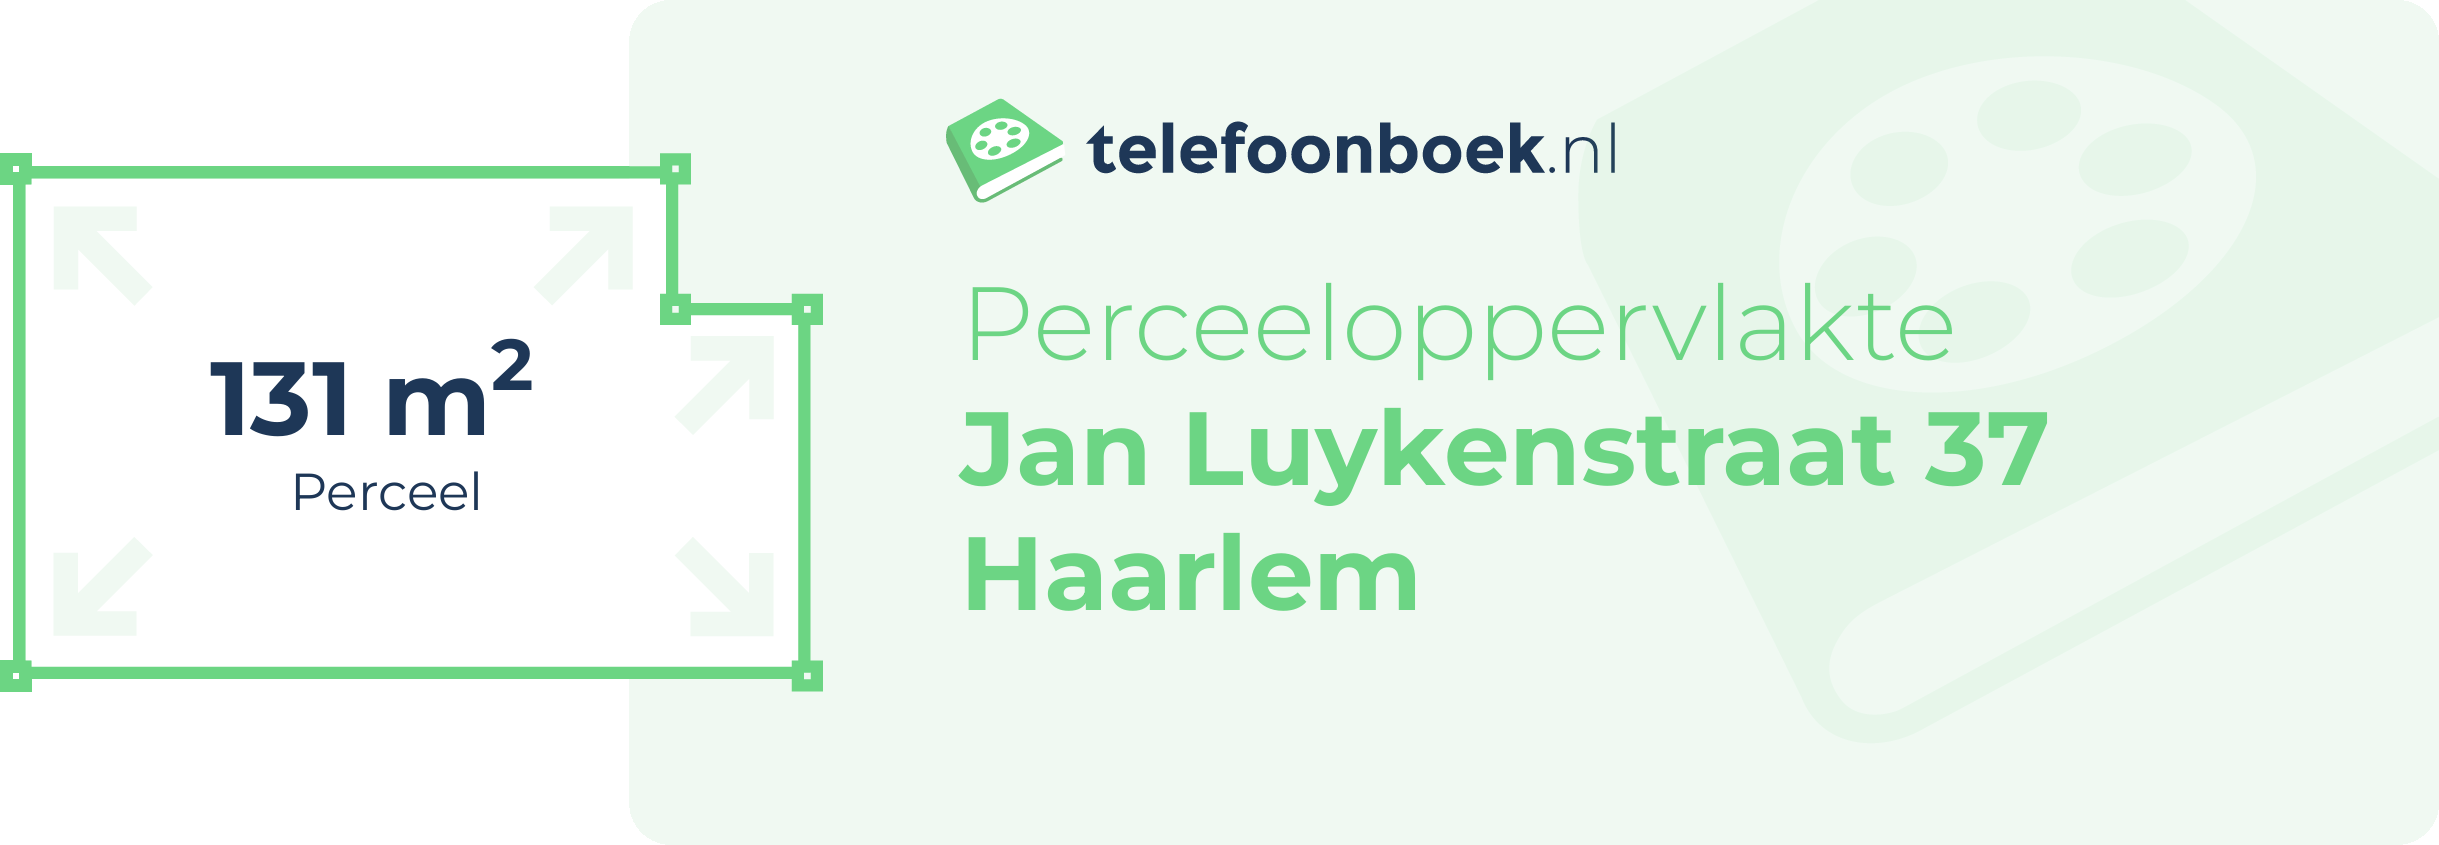 Perceeloppervlakte Jan Luykenstraat 37 Haarlem